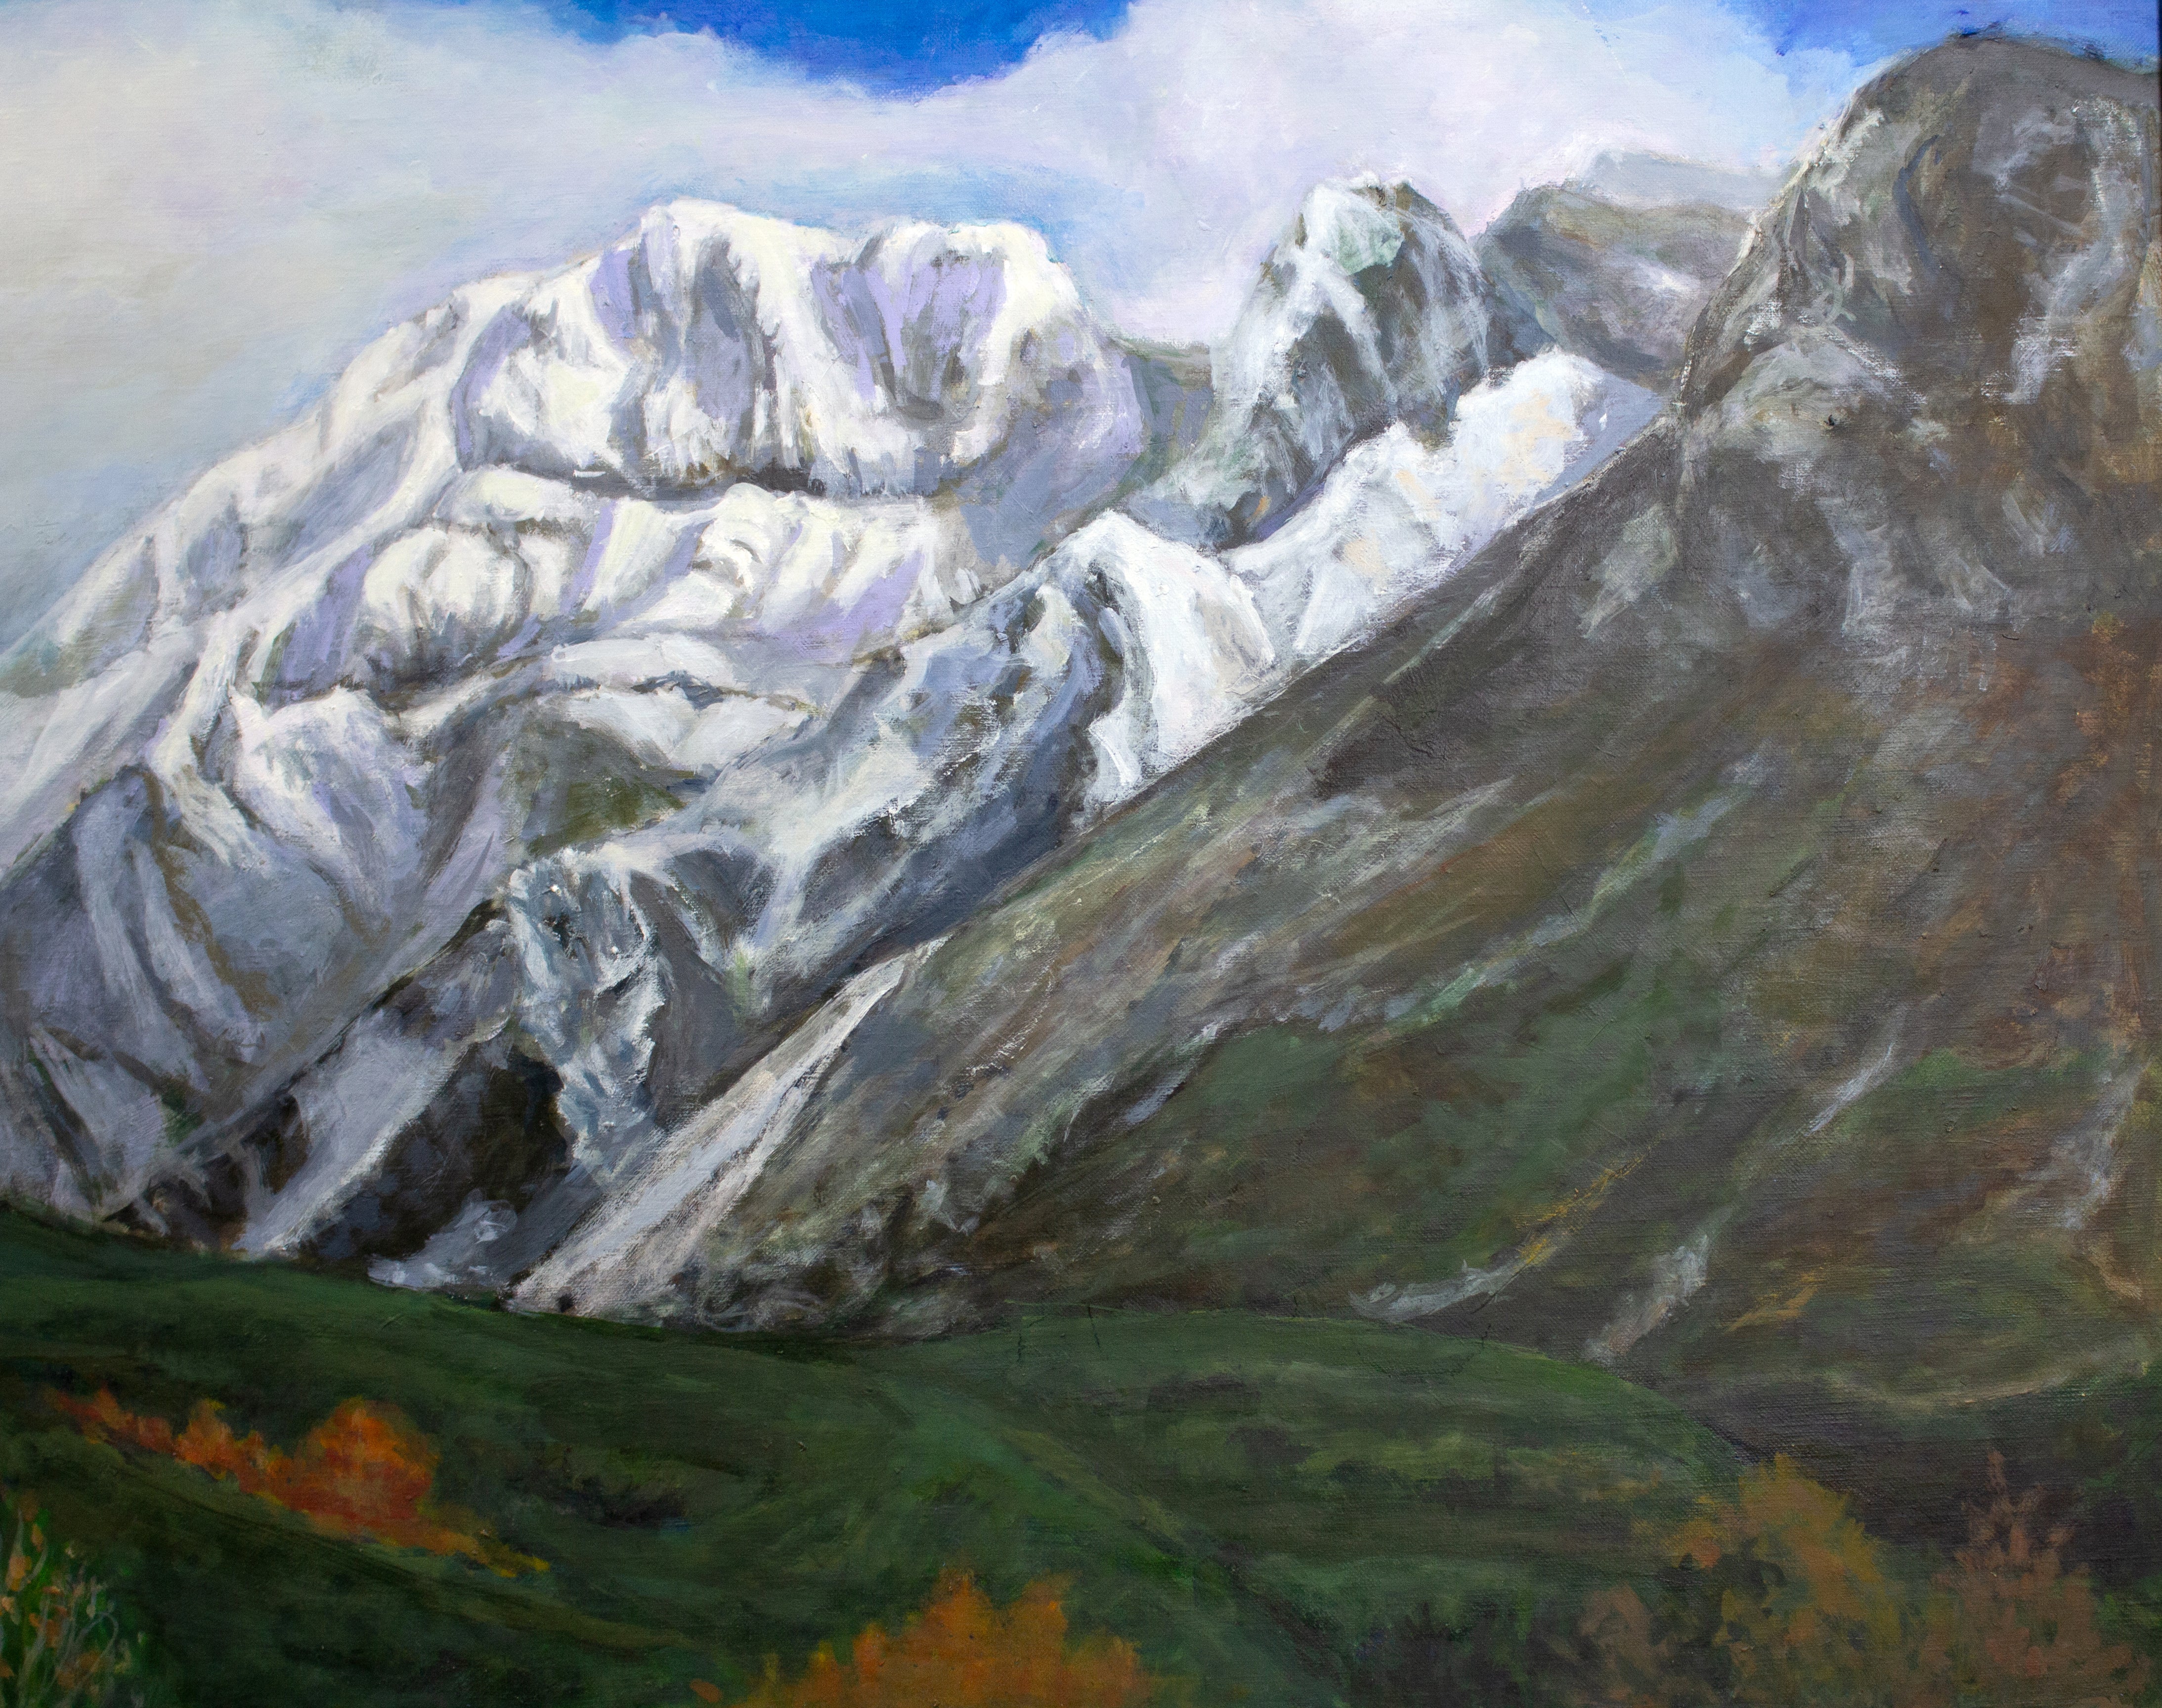 金澤 巌 『照り陰る冠雪の山（上ホロカメットク山）』 油彩画 - 北海道画廊